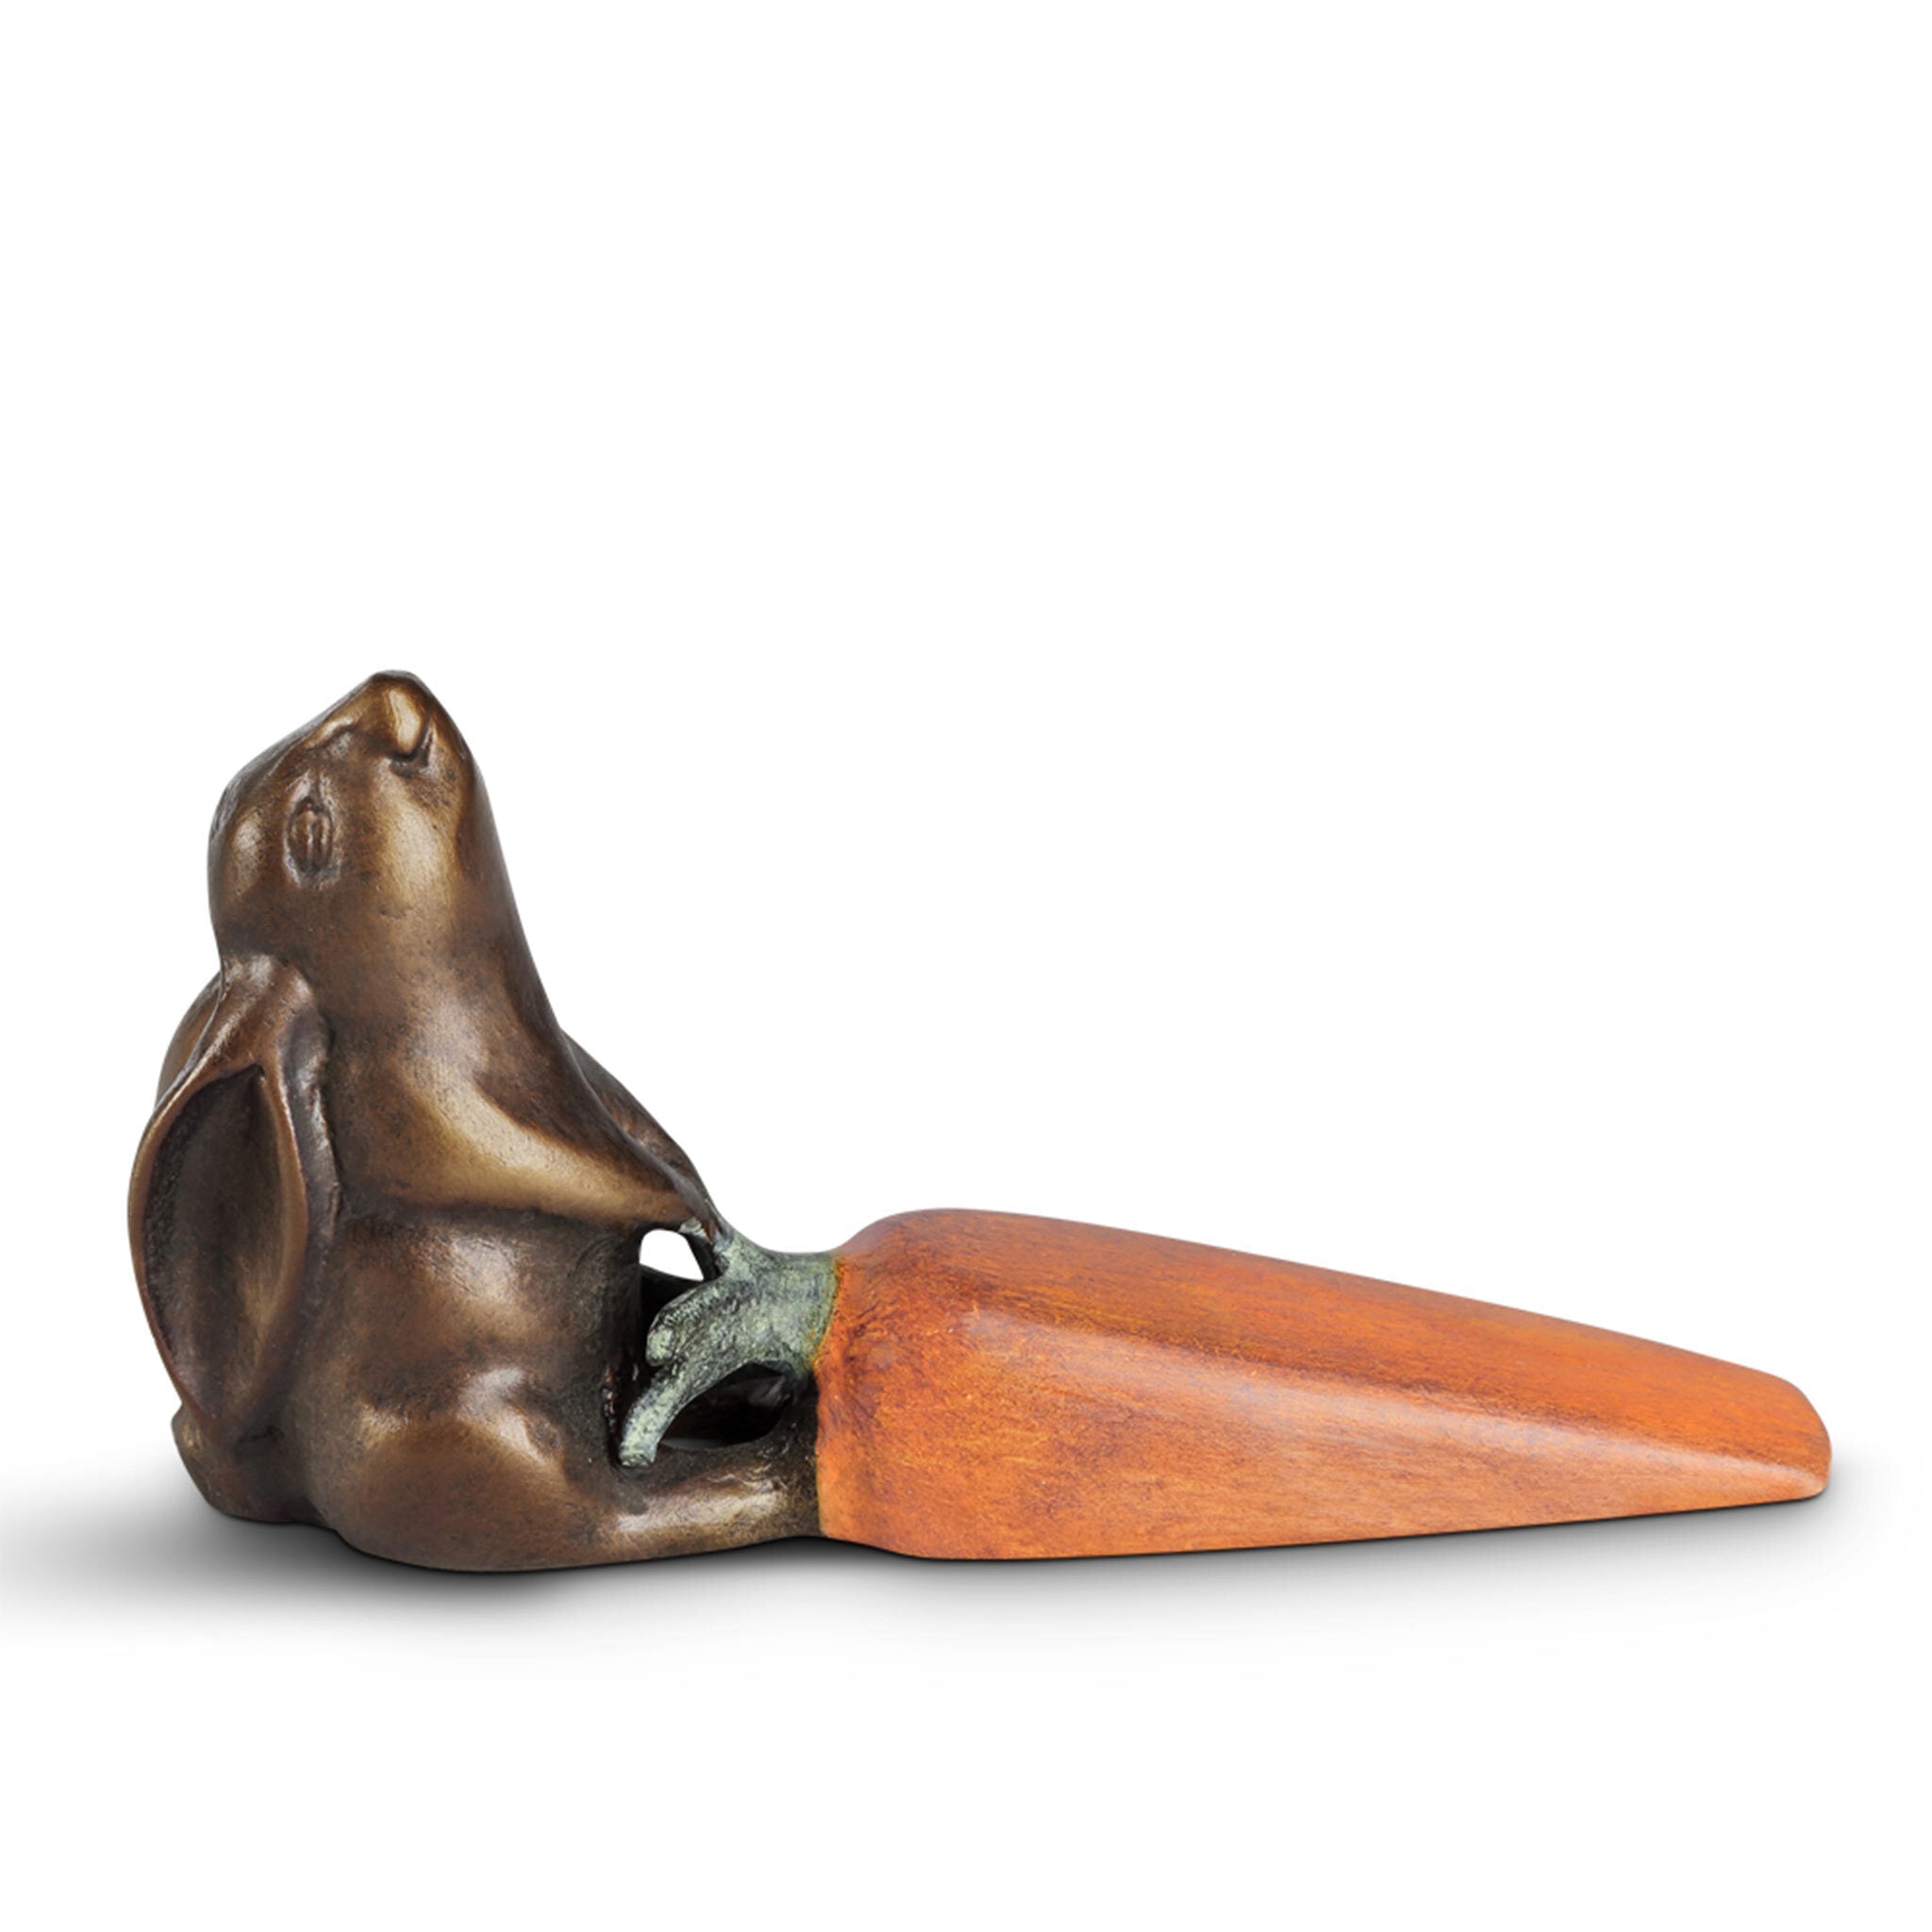 Rabbit and Carrot Doorstop